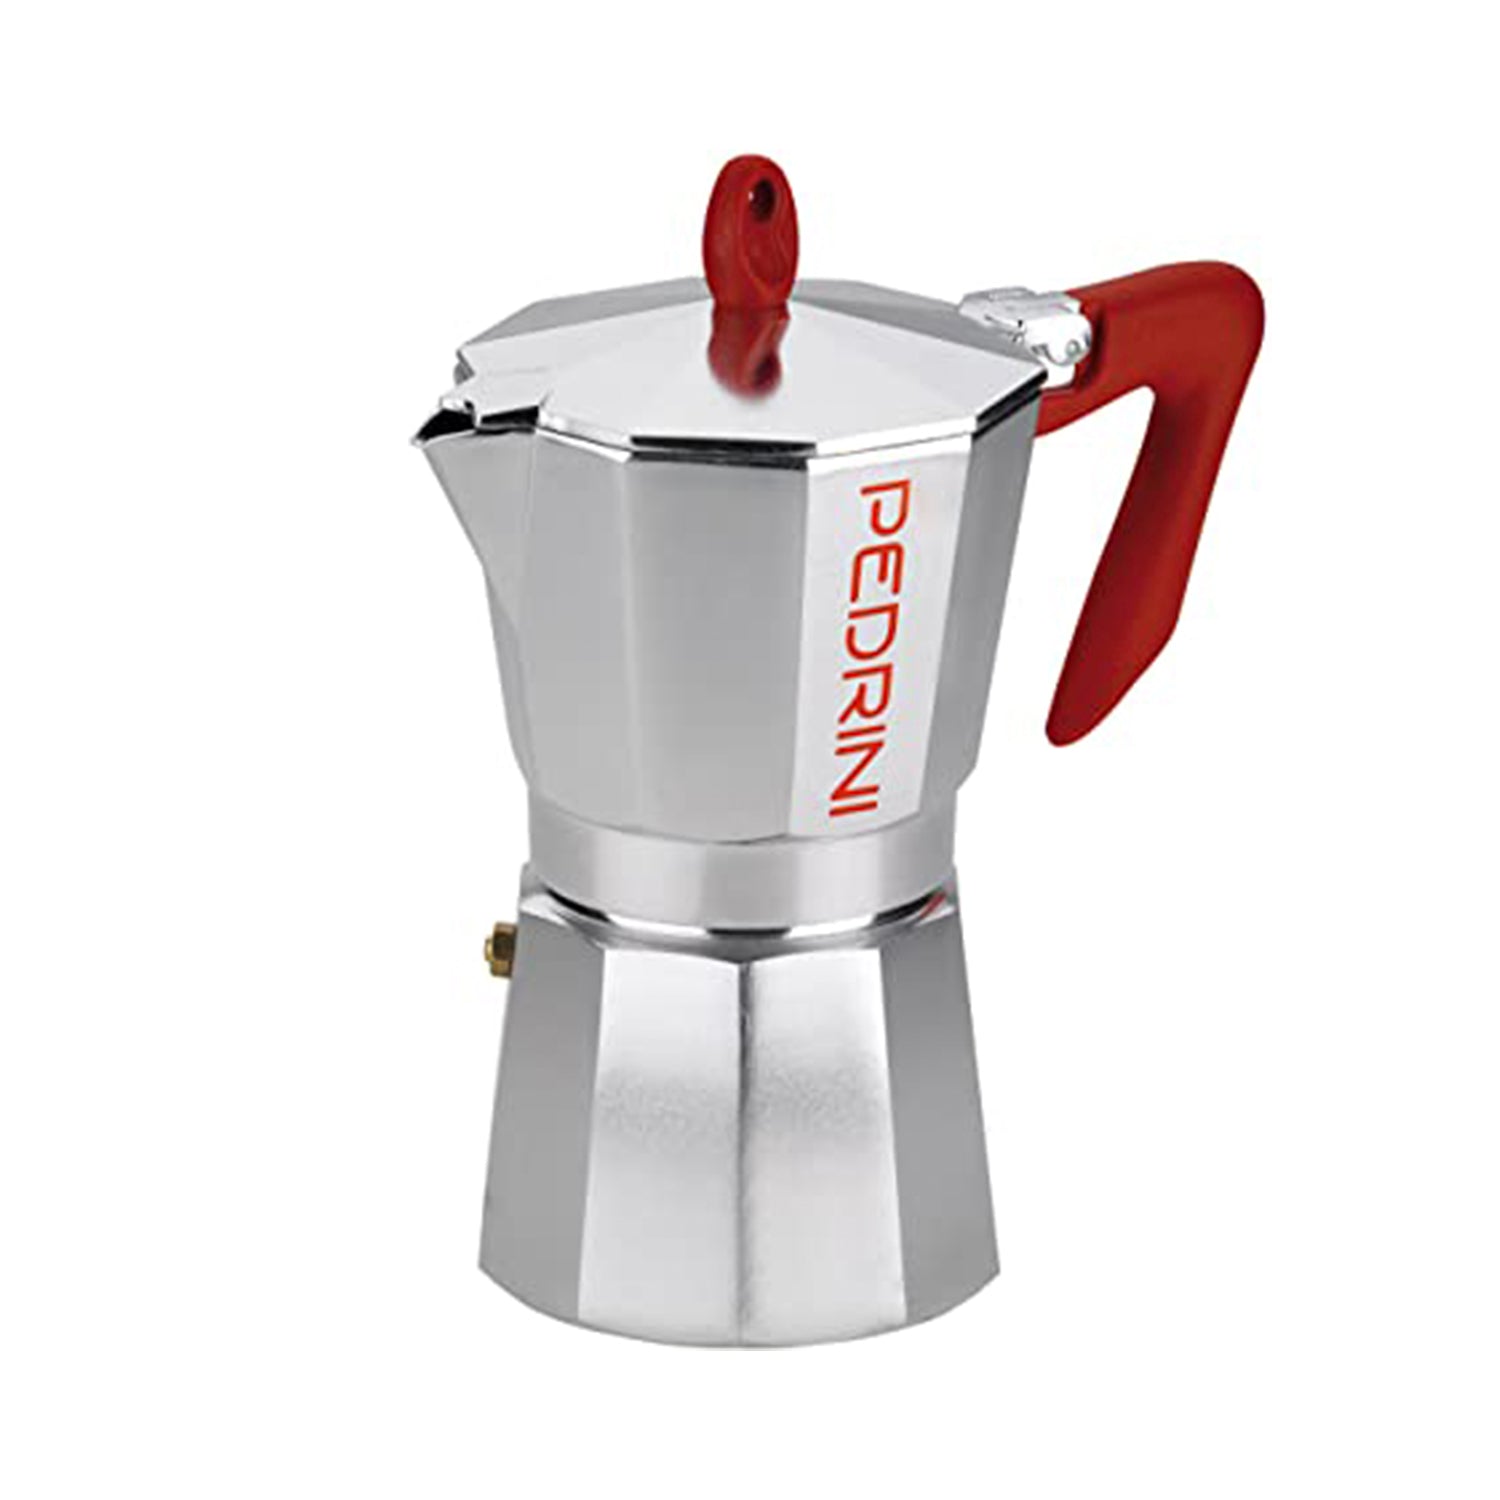 Pedrini Aluminium Coffee Maker 3cups Online at Best Price, Aluminium  Utensils